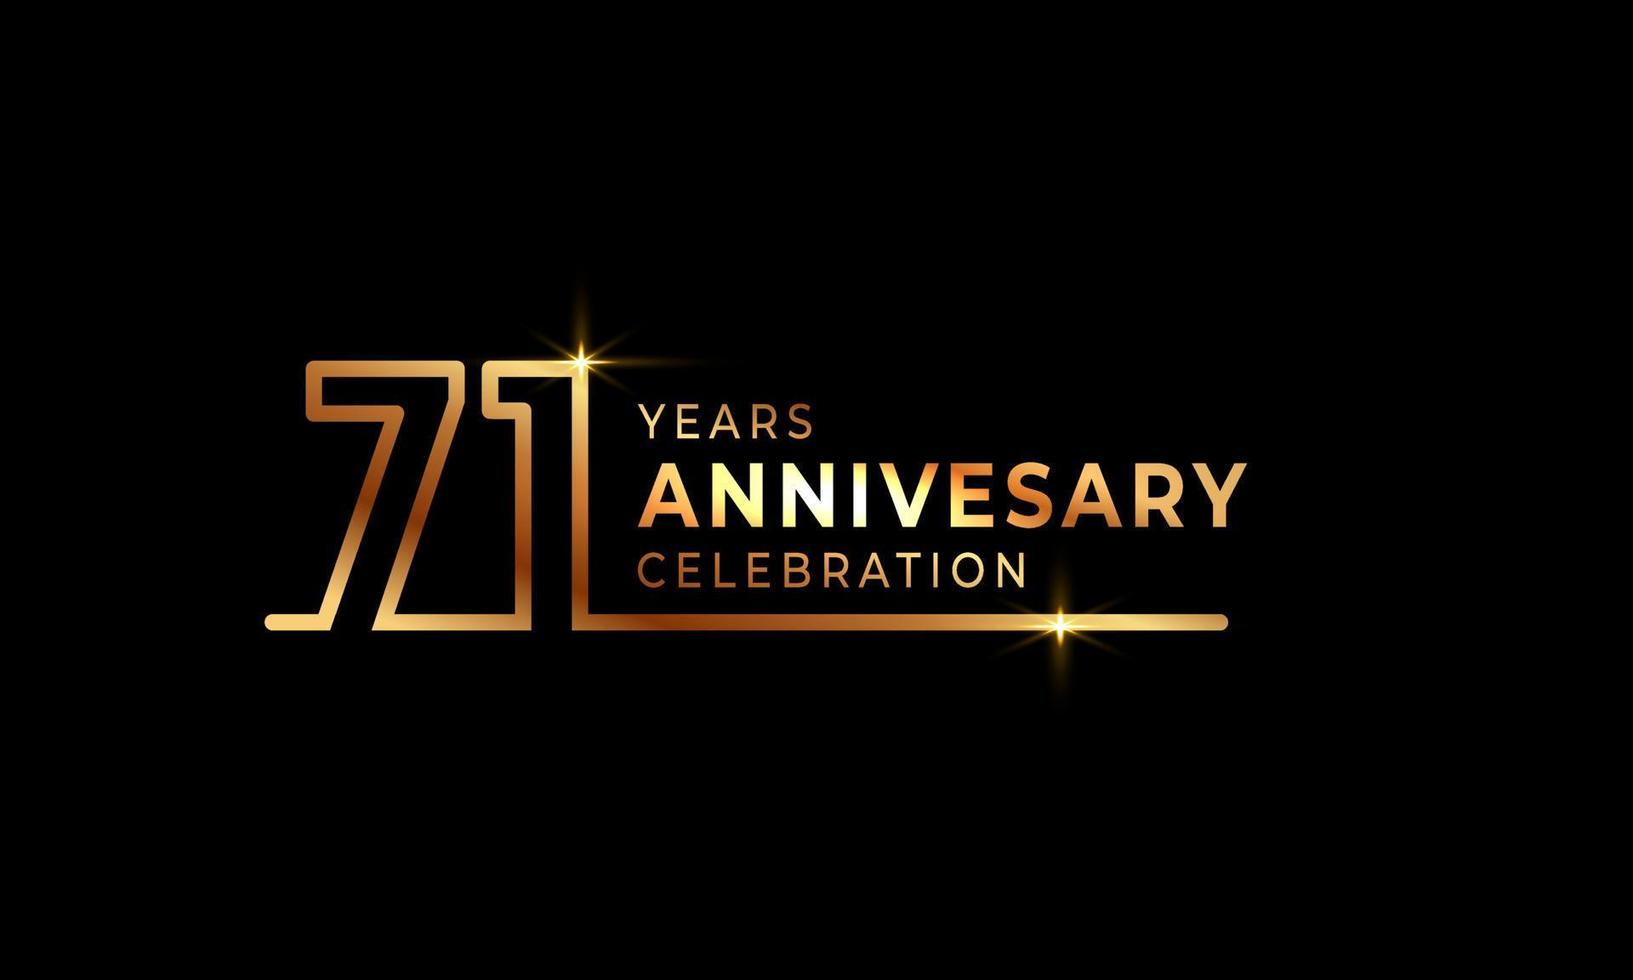 71-jarig jubileumviering logo met gouden gekleurde lettertypenummers gemaakt van één verbonden lijn voor feestgebeurtenis, bruiloft, wenskaart en uitnodiging geïsoleerd op donkere achtergrond vector